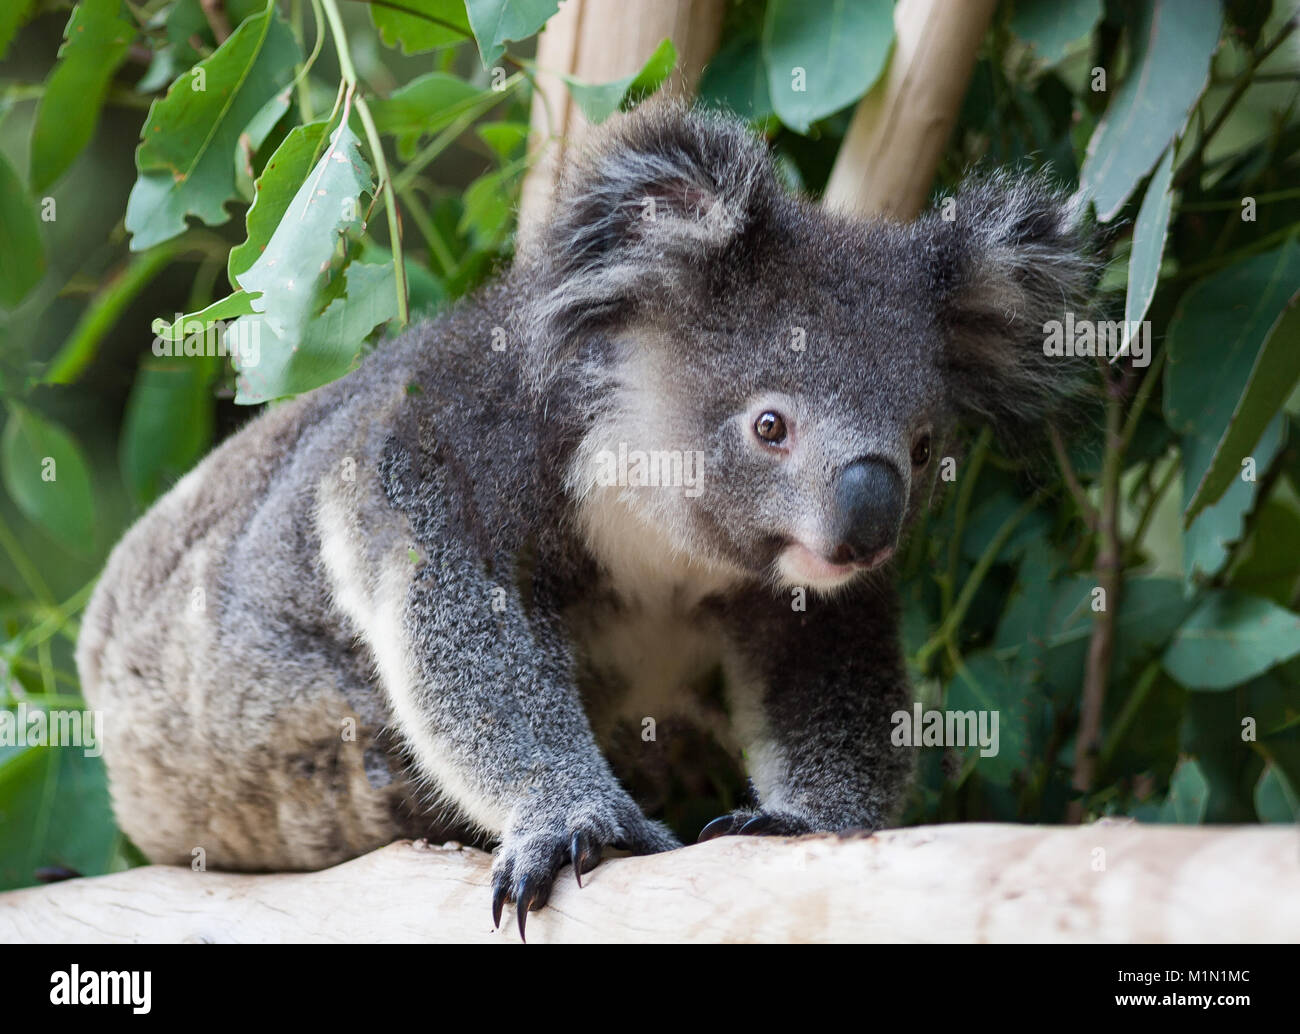 Il Koala strisciando alla sua sinistra come è voce in una posizione diversa tra le foglie di gomma. È fissando qualcosa nella sua linea di vista. Foto Stock